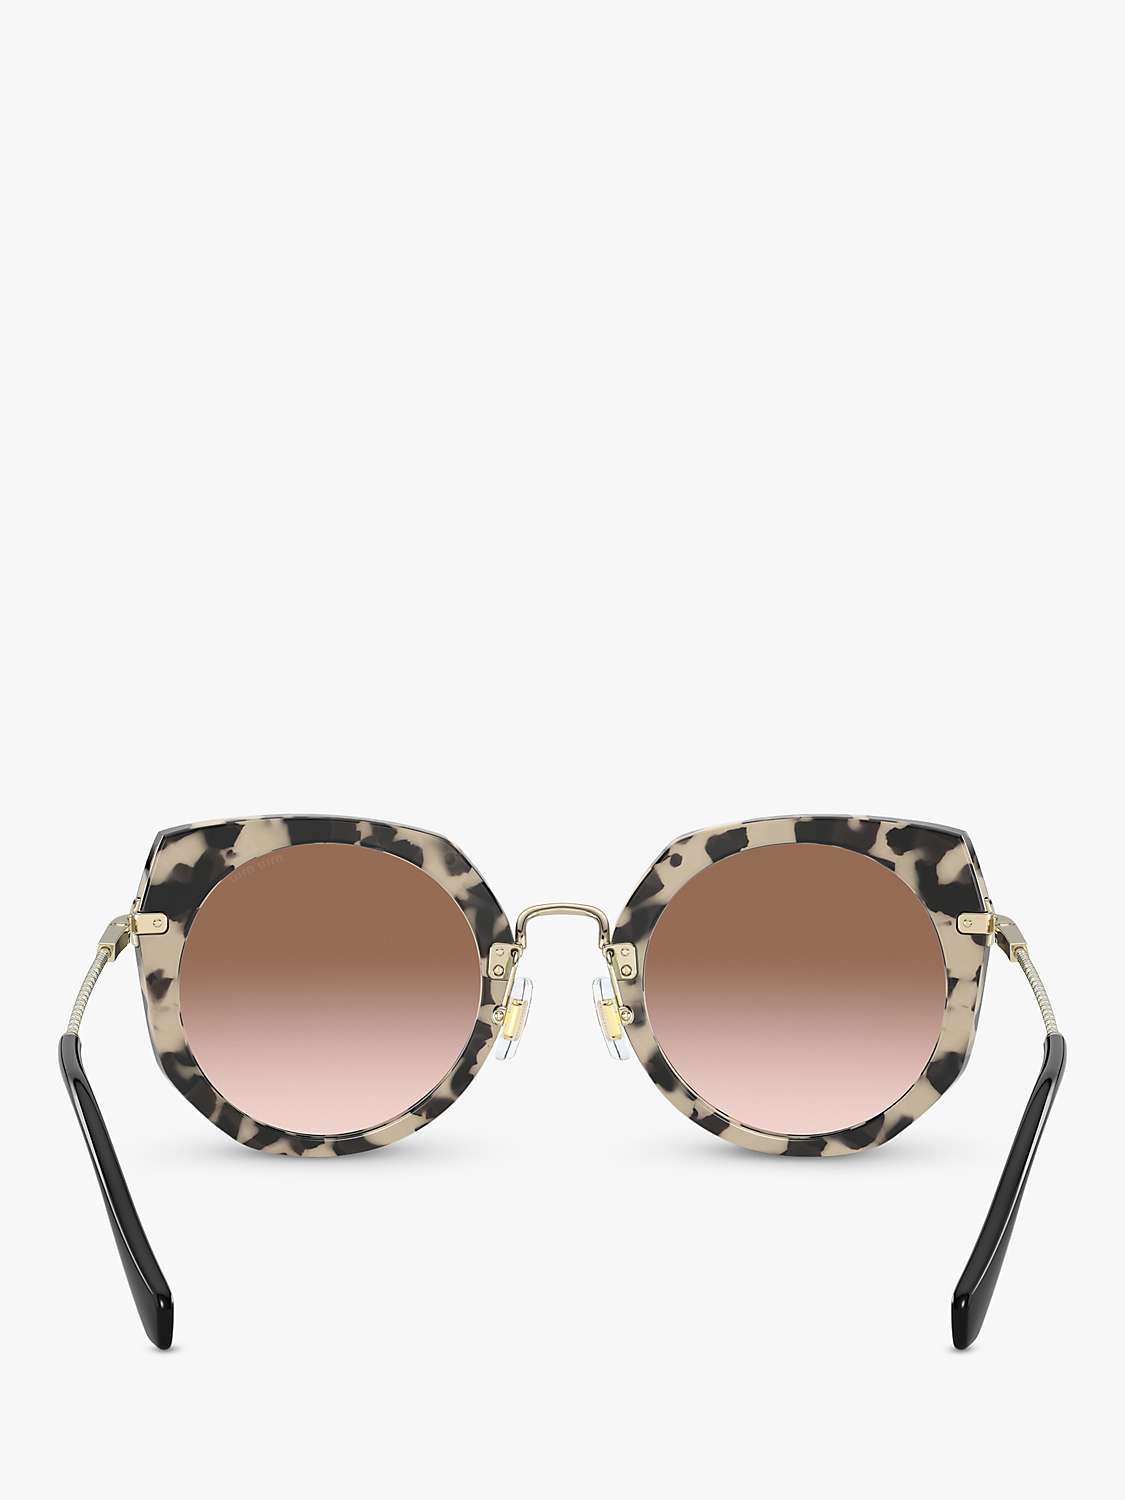 Miu Miu MU 02XS Women's Oval Sunglasses, Pink Havana/Pink Gradient at ...